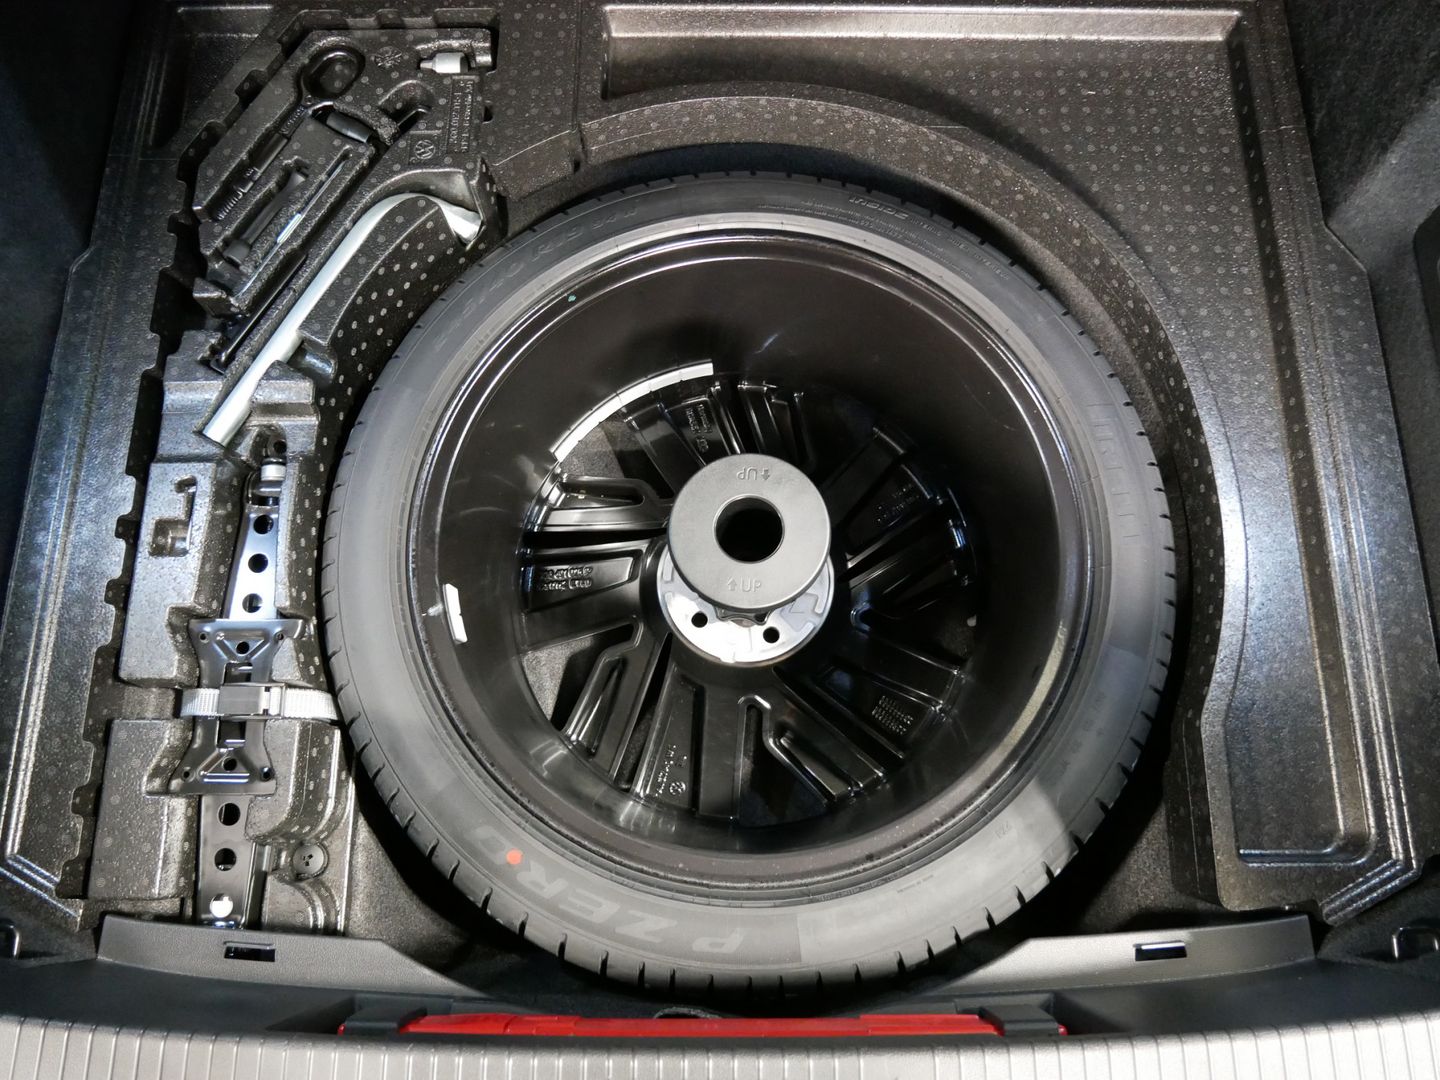 Volkswagen Arteon Shooting Brake 2.0 TDI 147 kW R-LINE